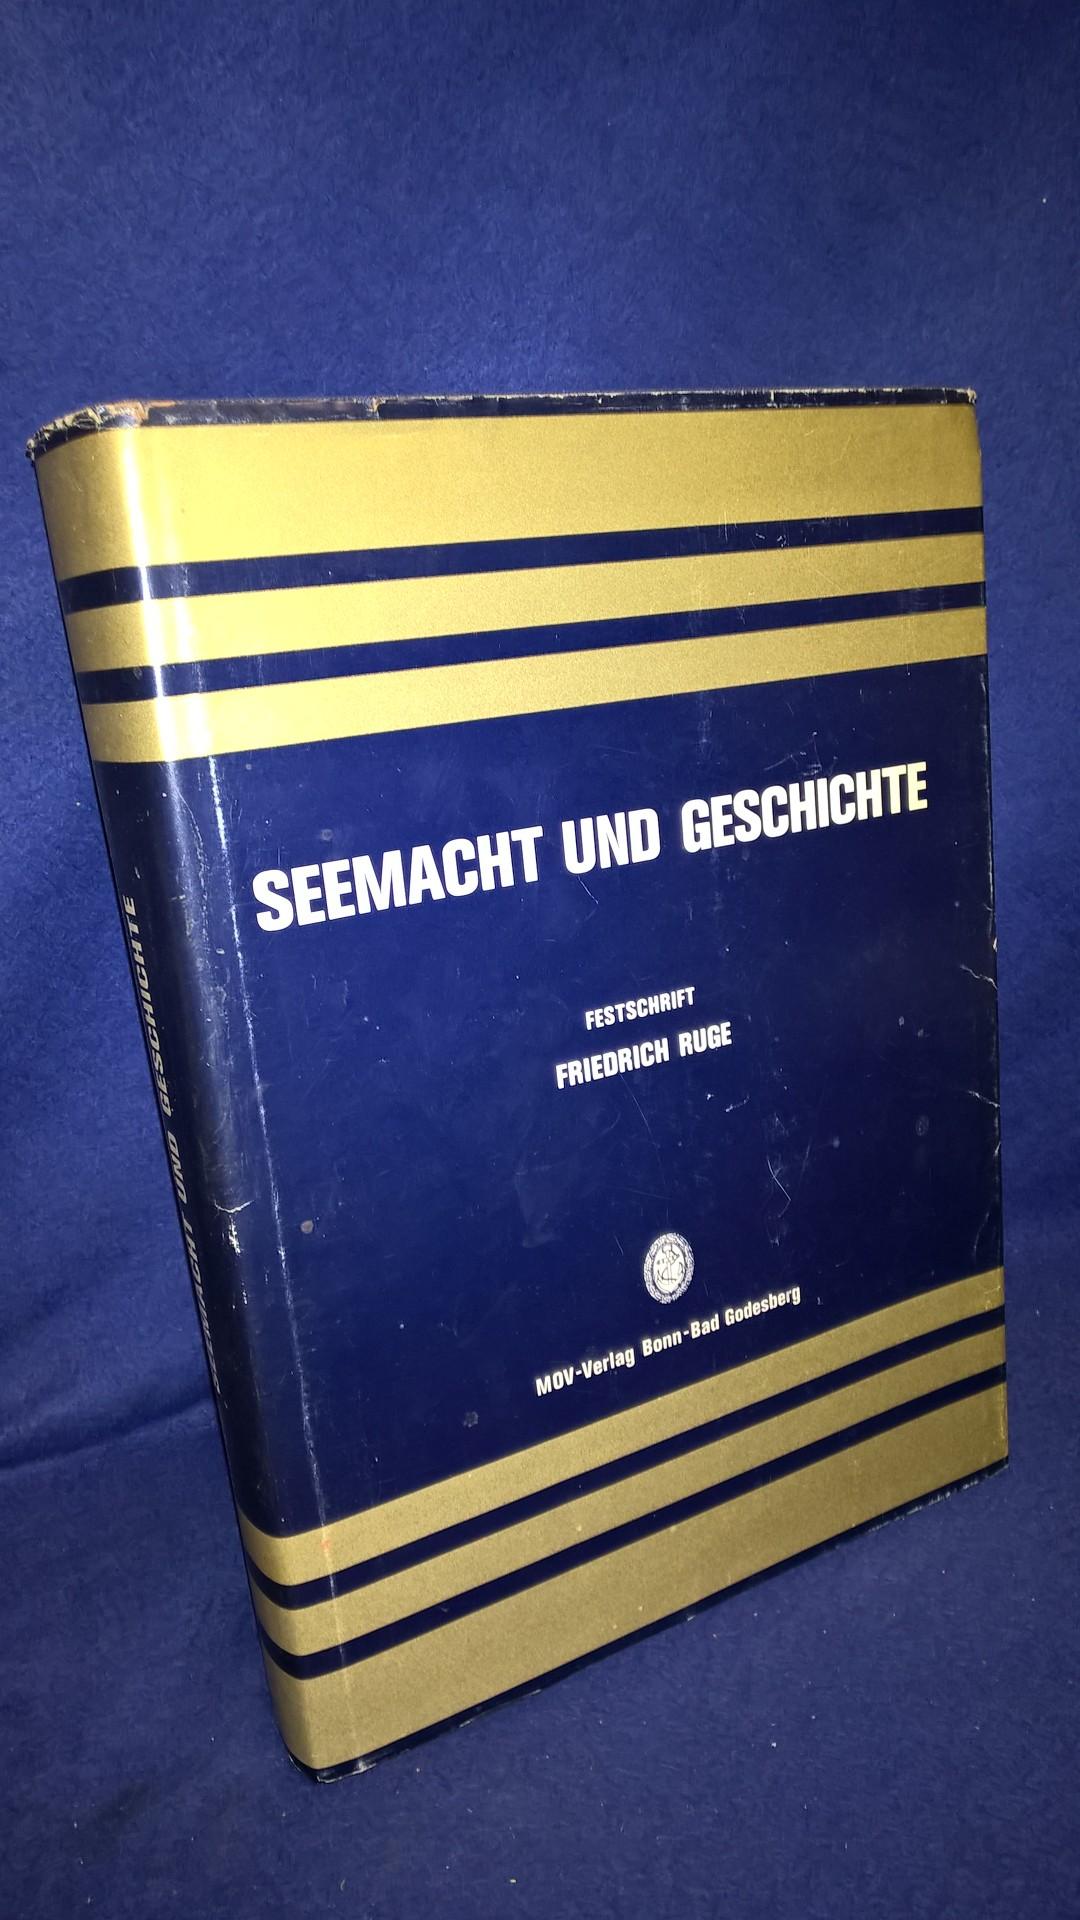 Seemacht und Geschichte. Festschrift zum 80. Geburtstag